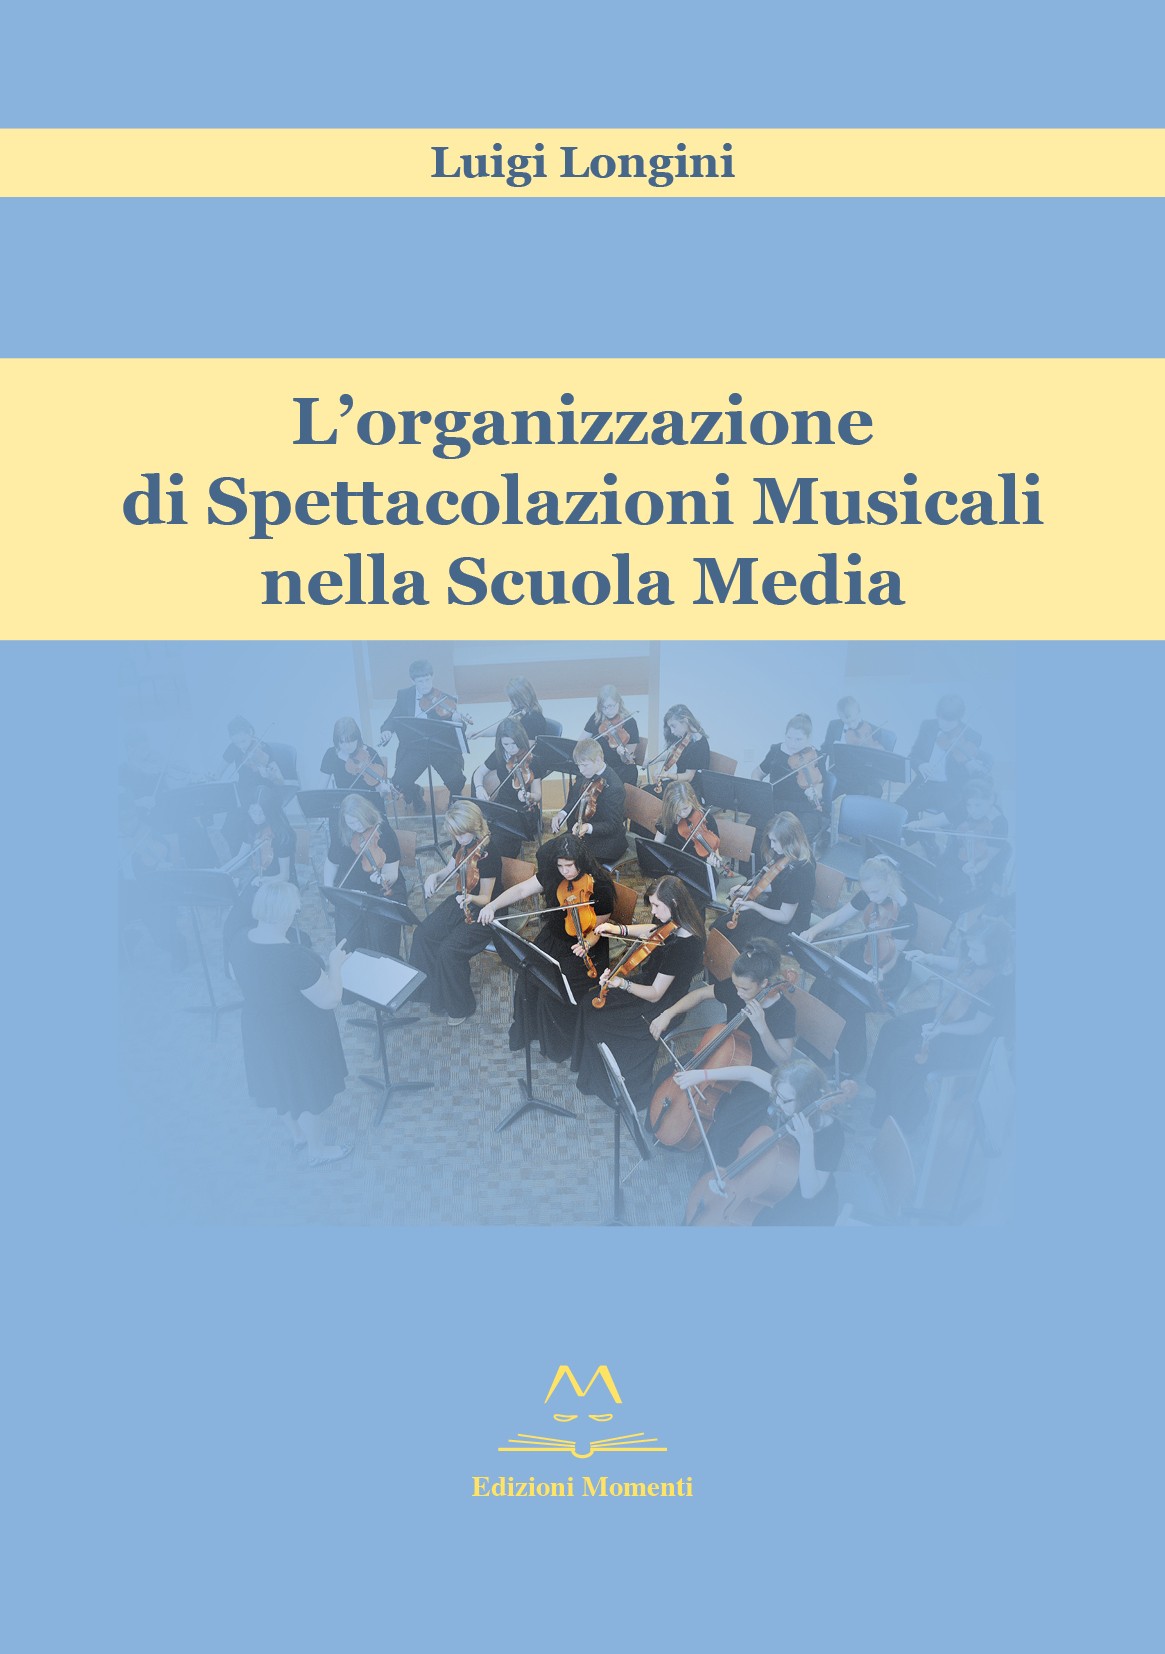 L'organizzazione di Spettacolazioni Musicali nella Scuola Media di Luigi Longini